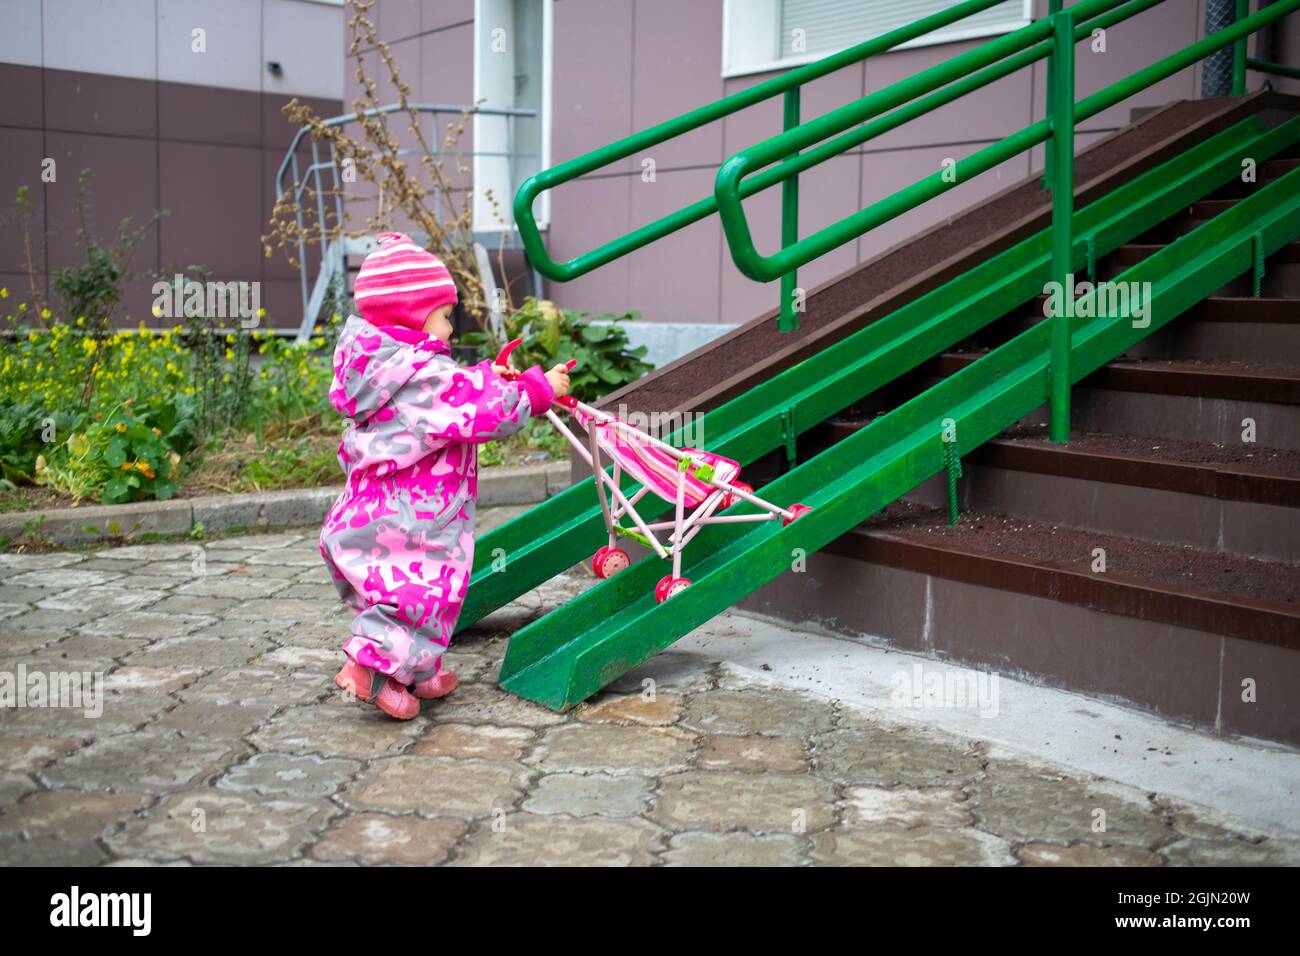 Nettes Kleinkind schleppt einen Spielzeug-Kinderwagen entlang der Rampe der  Treppe. Hangwanderweg für behinderte Menschen, Personen, die Kinderwagen  schieben, Wagen mit Edelstahlstangen Stockfotografie - Alamy